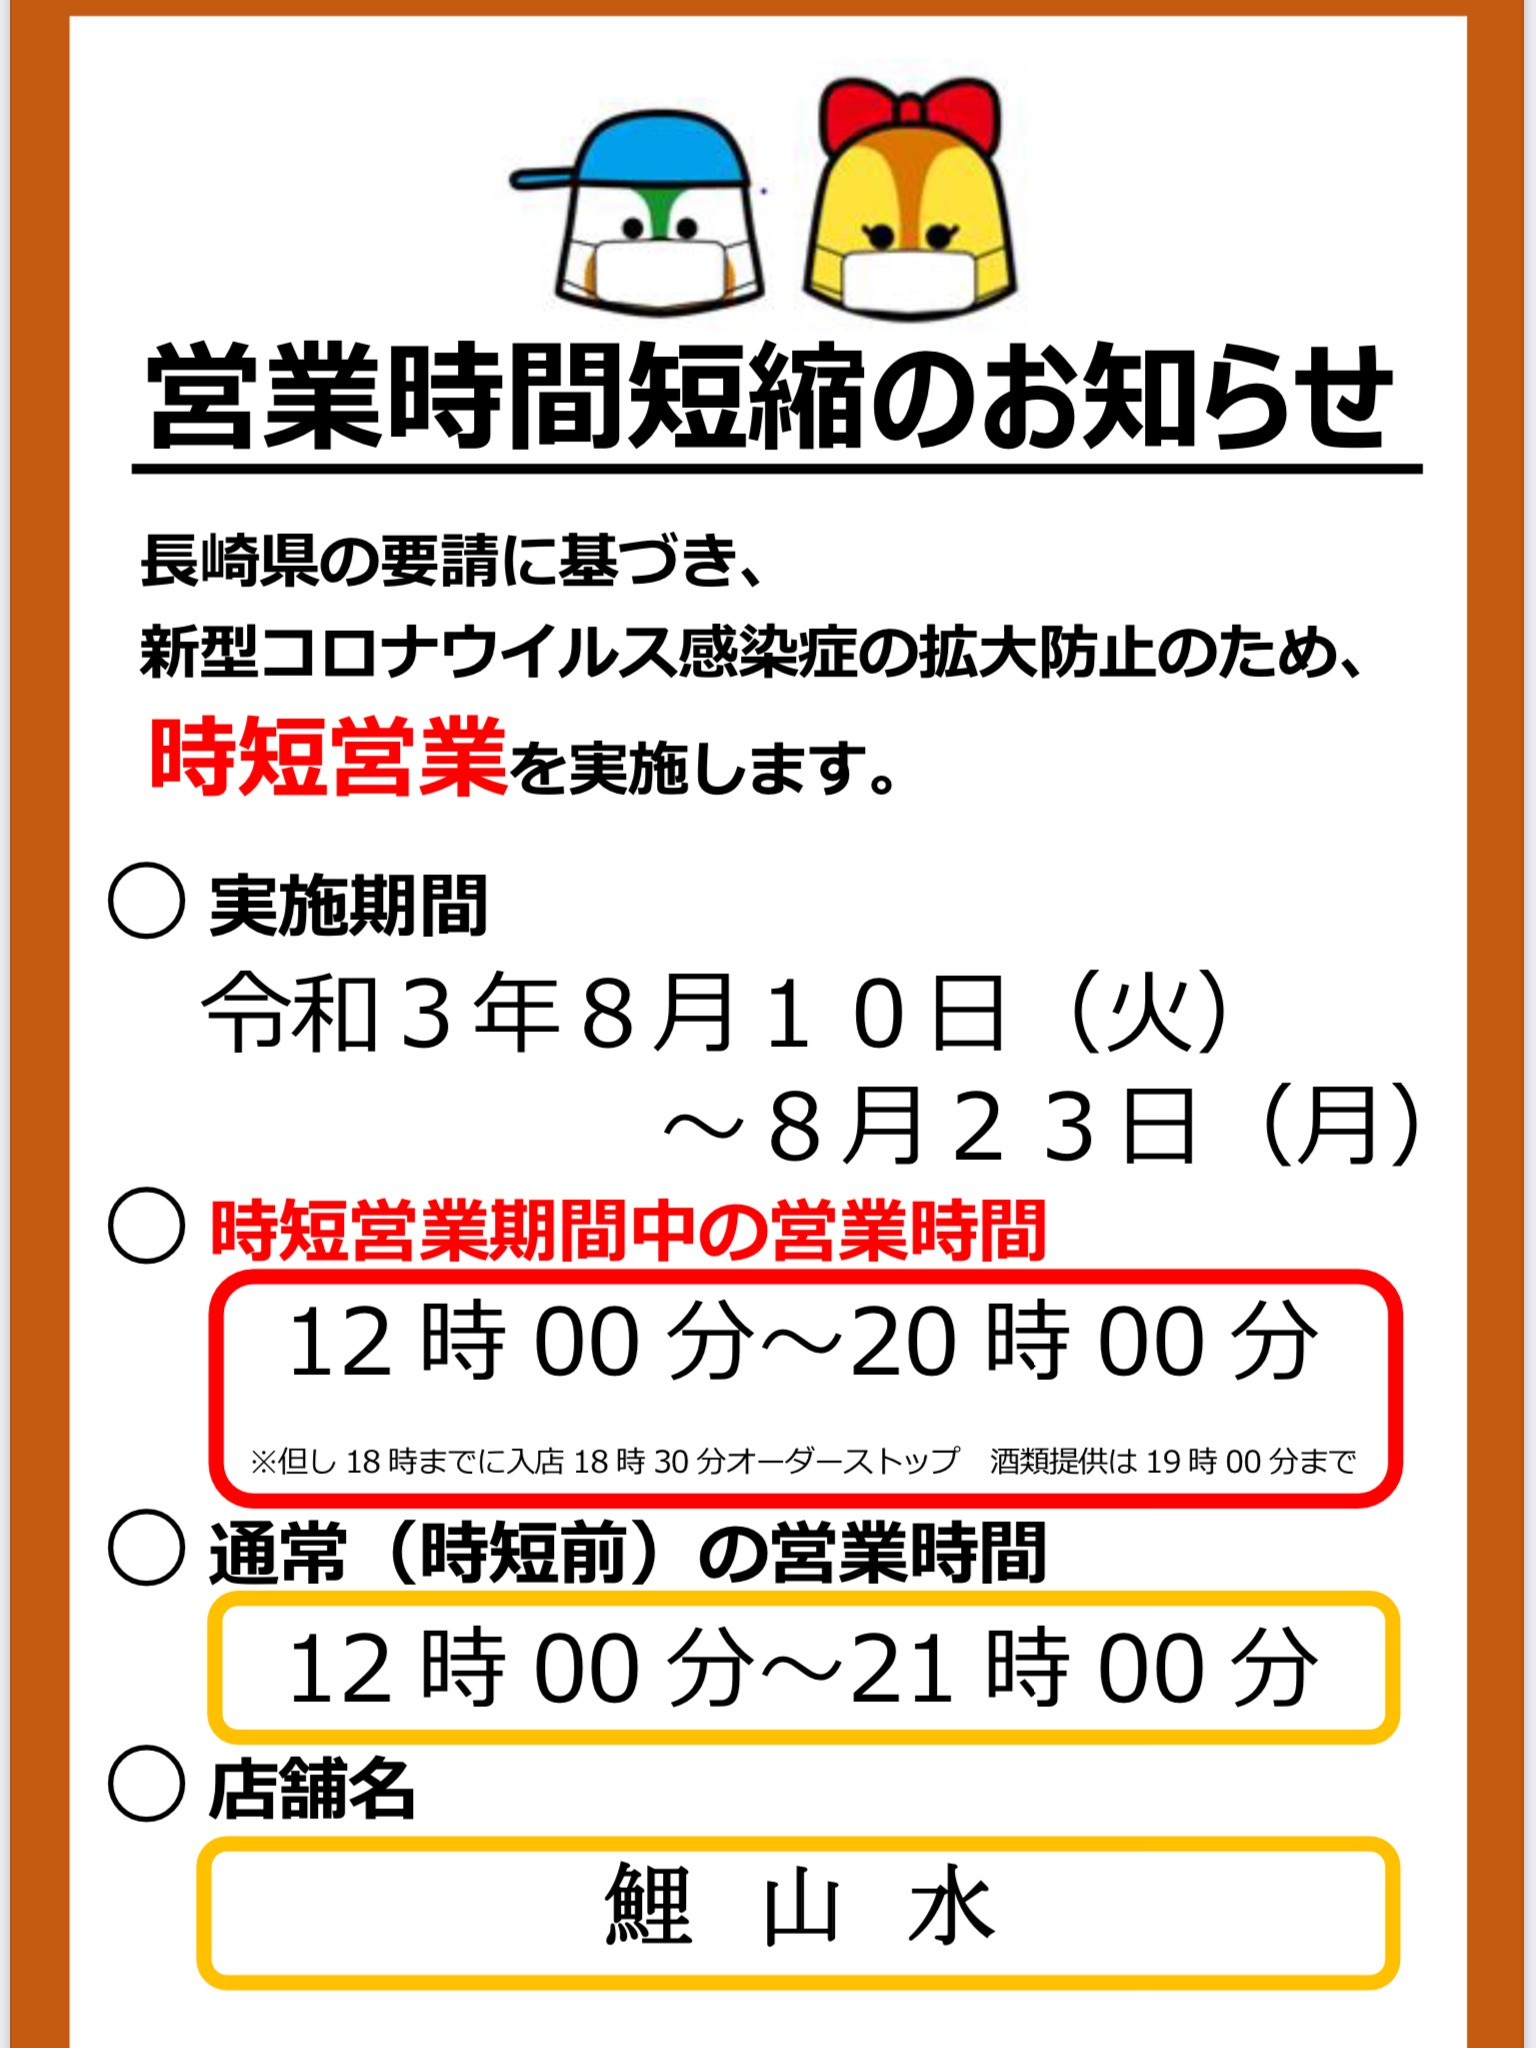 長崎県の要請に基づく『営業時間短縮』のお知らせ